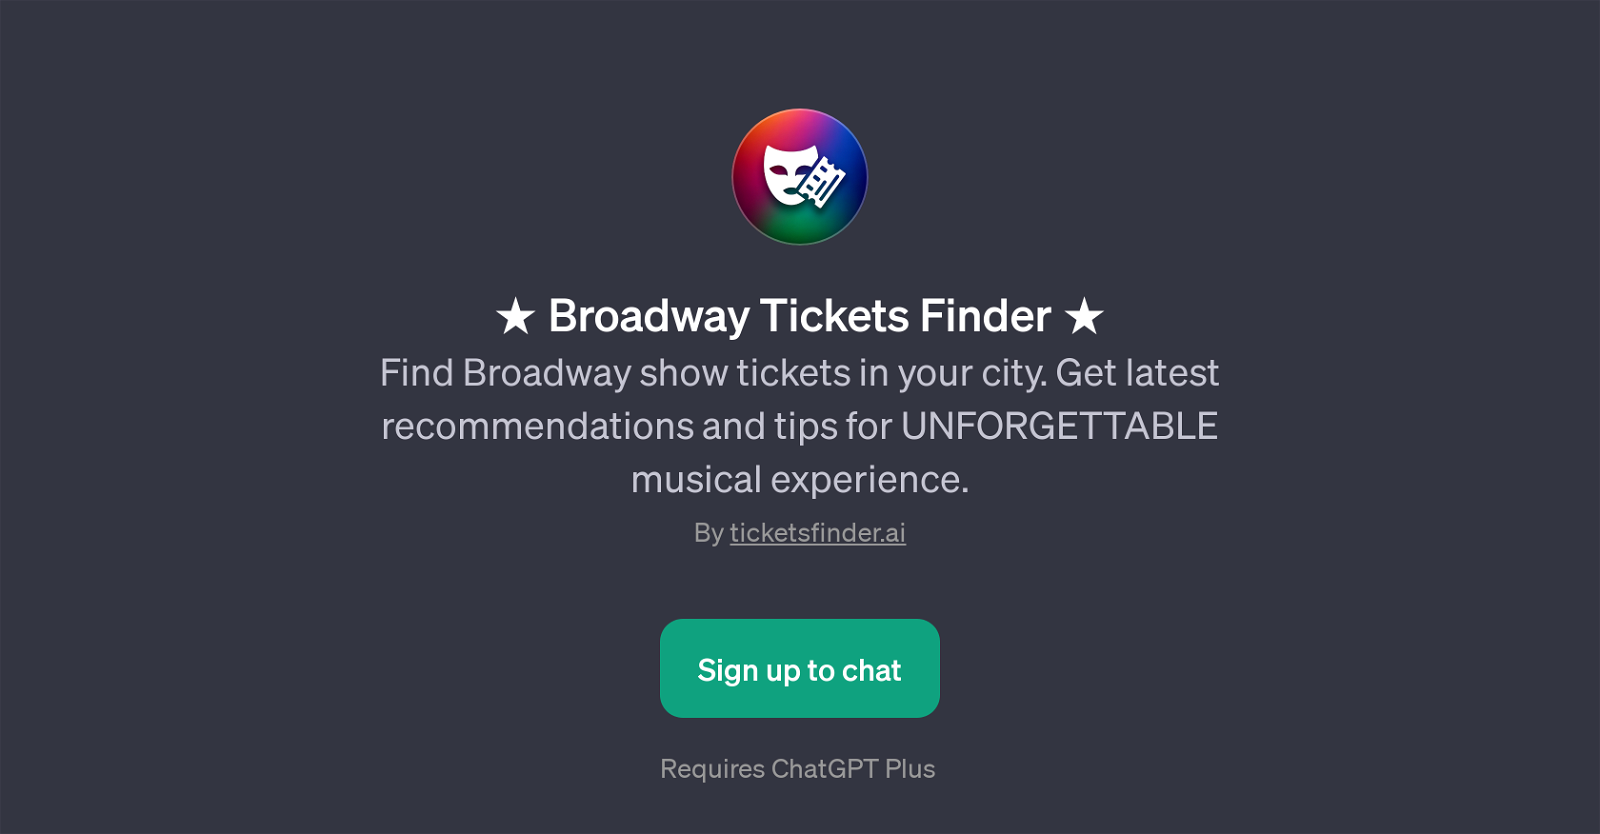 Broadway Tickets Finder website